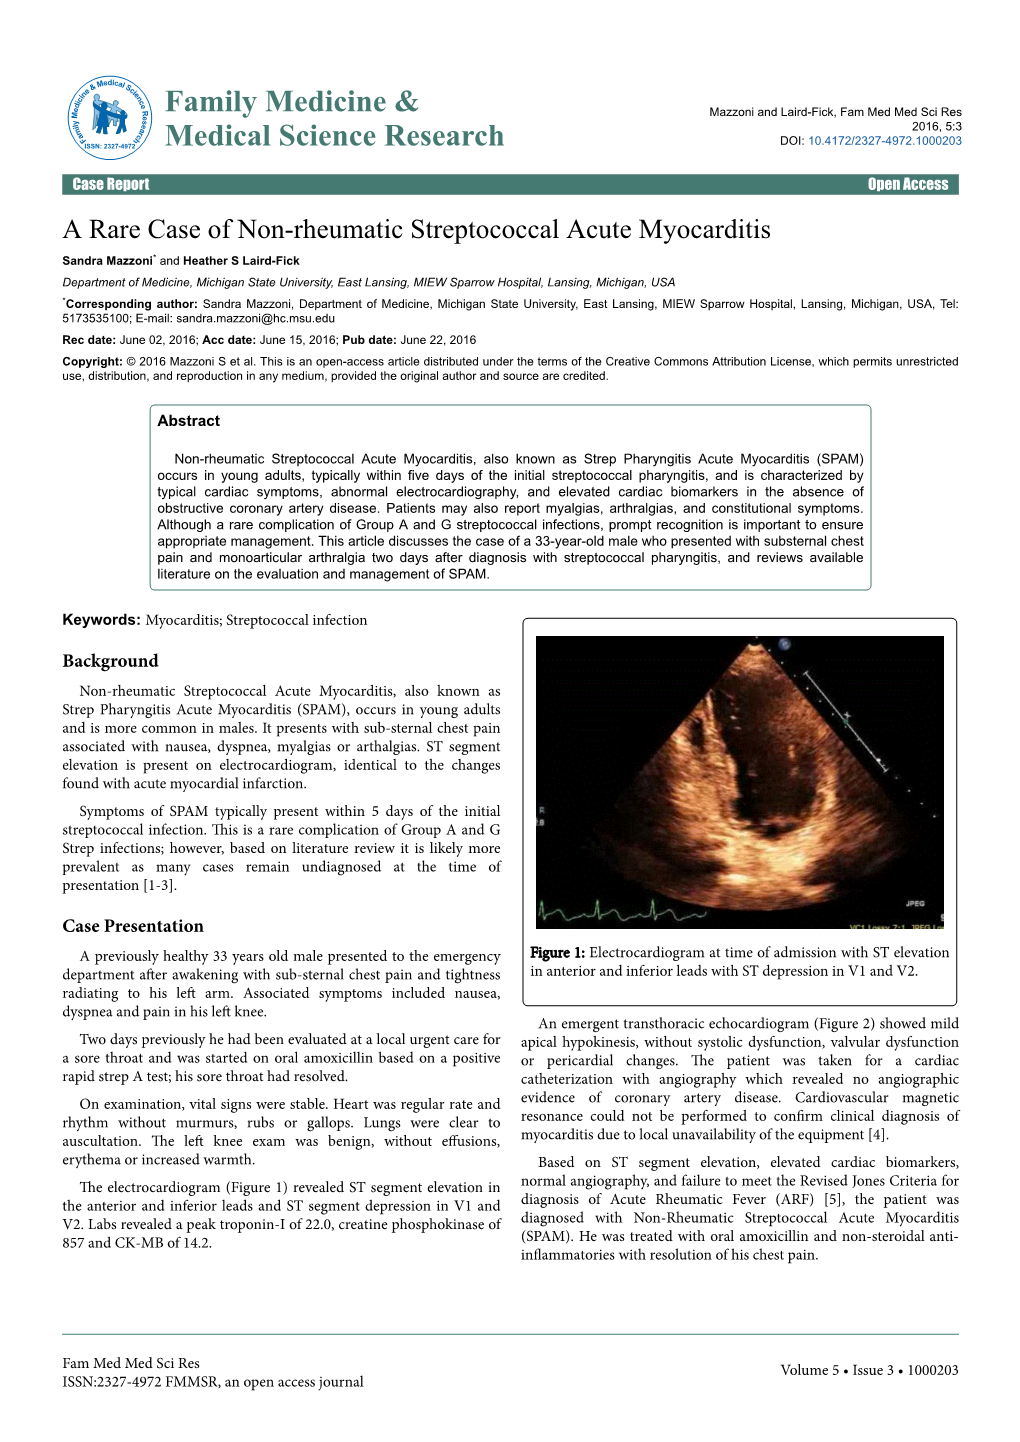 A Rare Case of Non-Rheumatic Streptococcal Acute Myocarditis